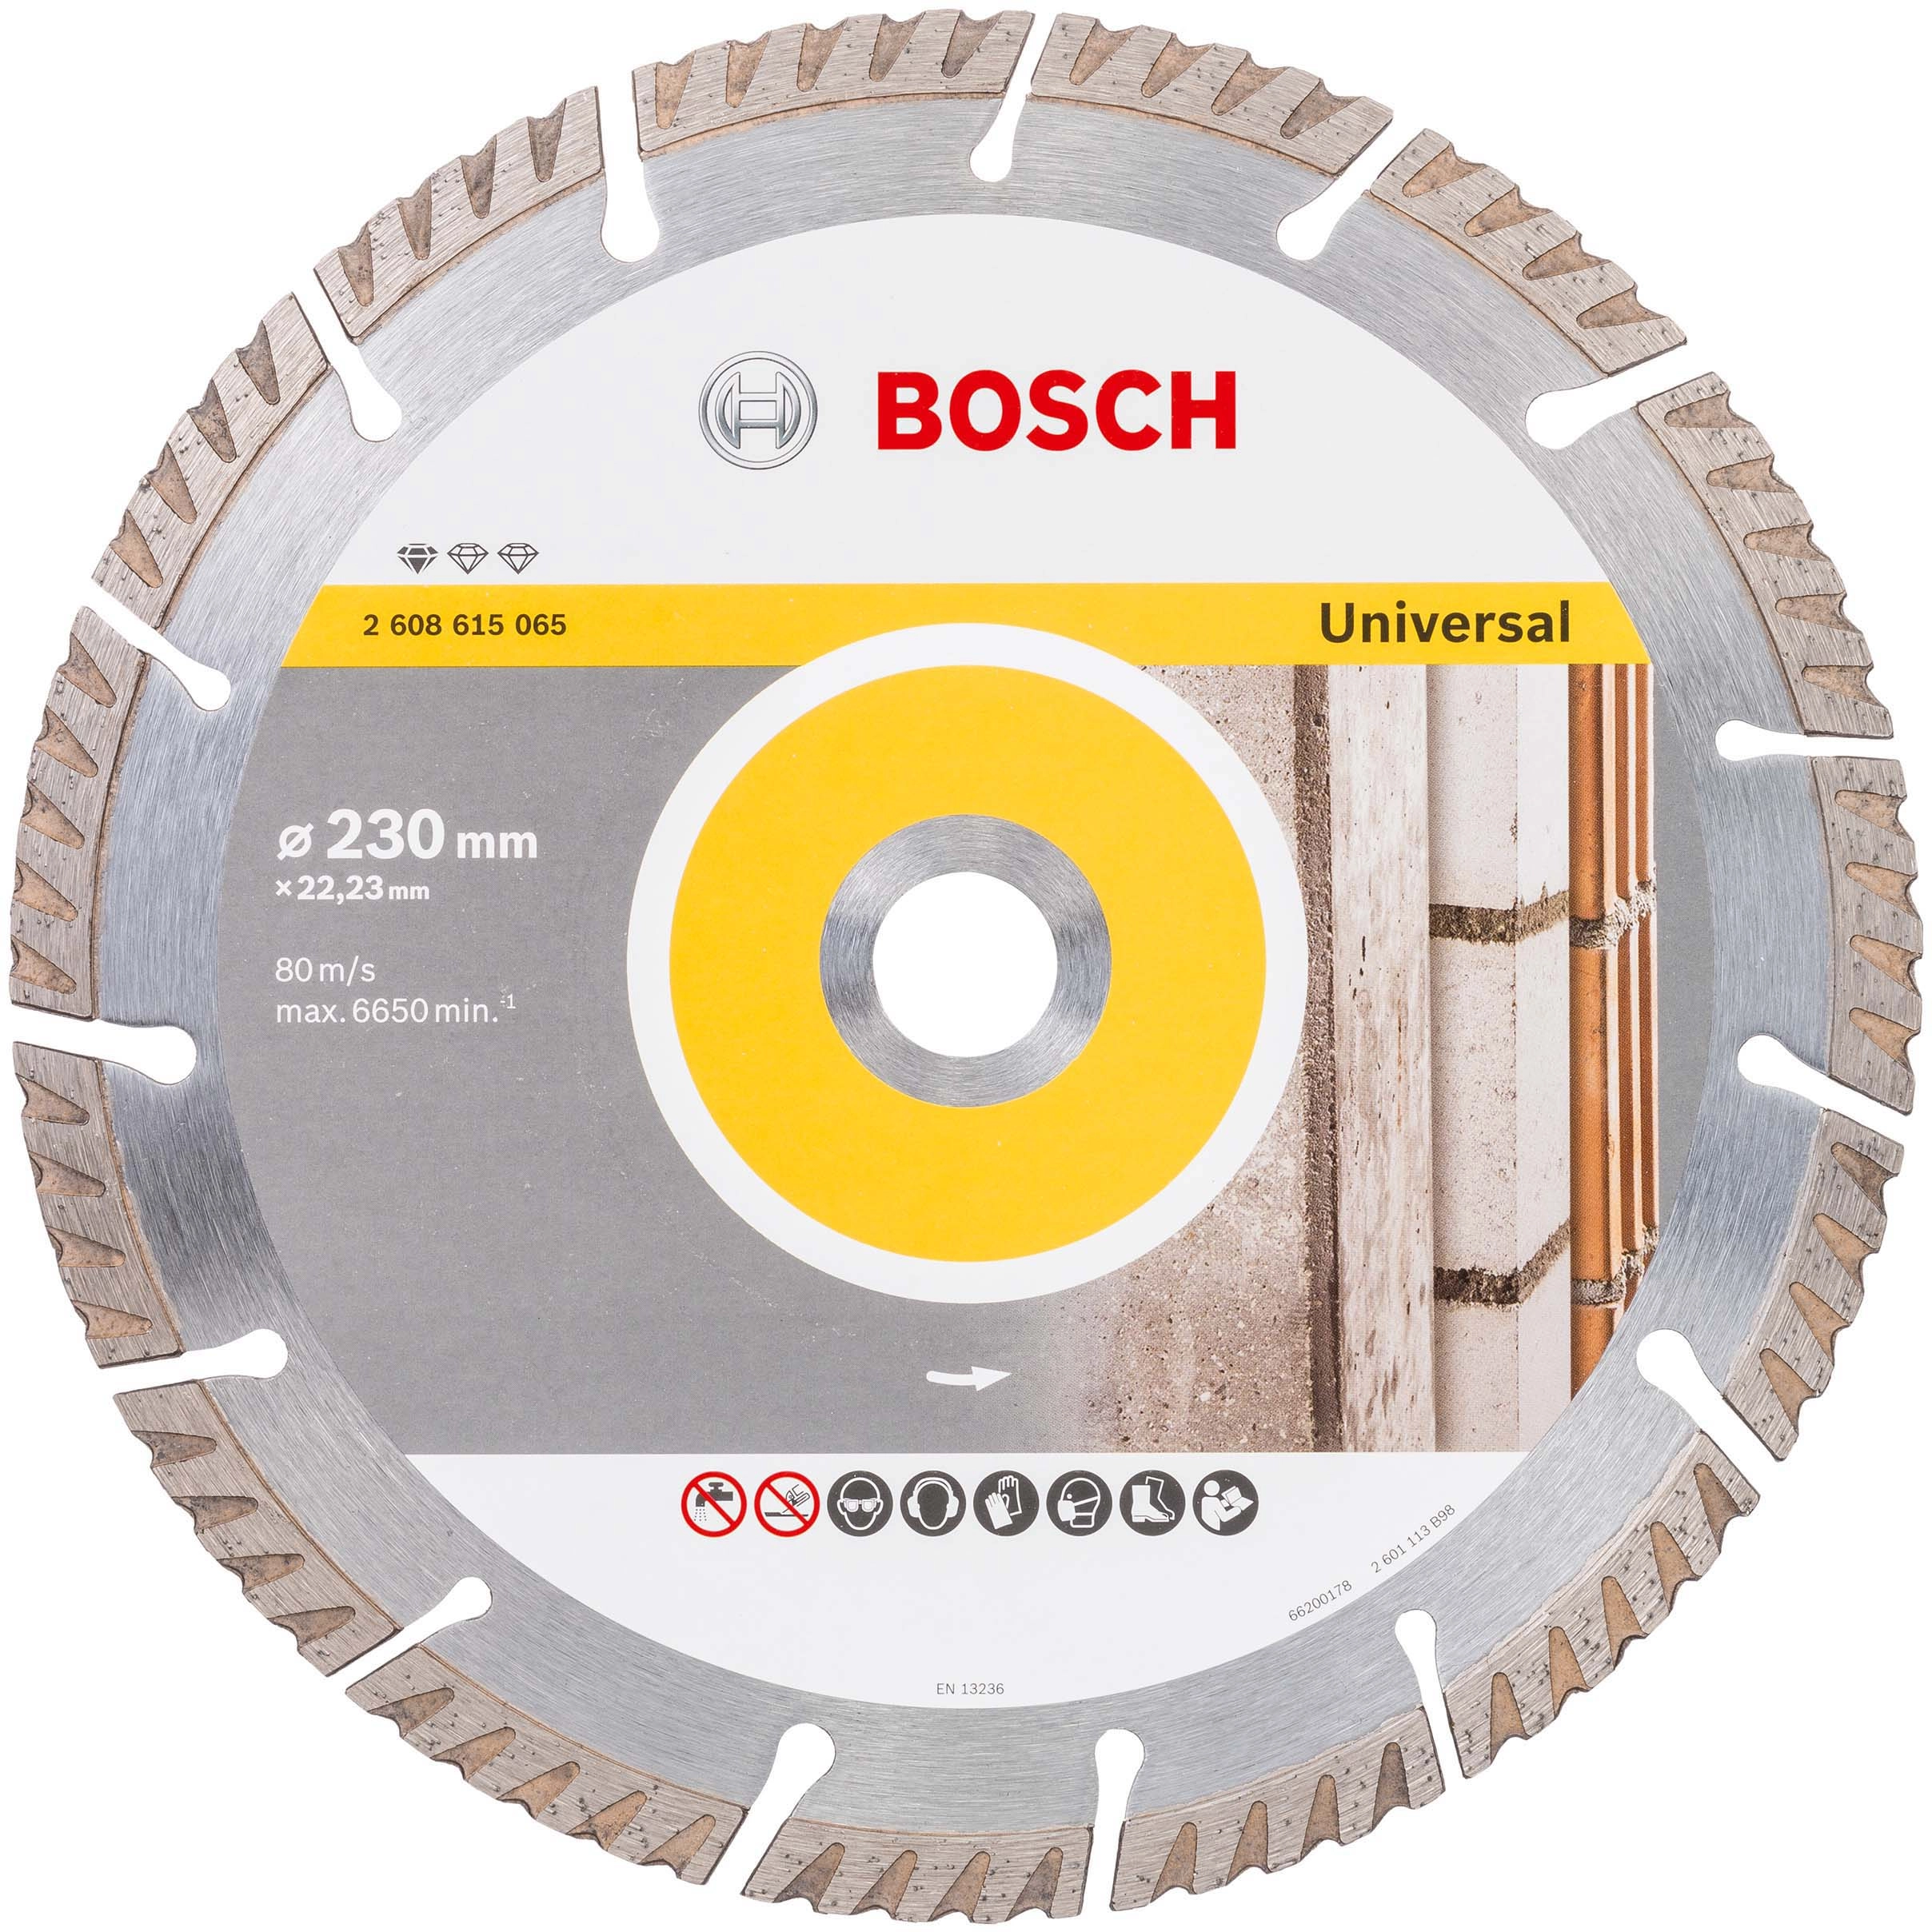 Bosch Diamant-Trennscheibe 230 mm mm x kaufen Standard Universal 22/23 für OBI bei